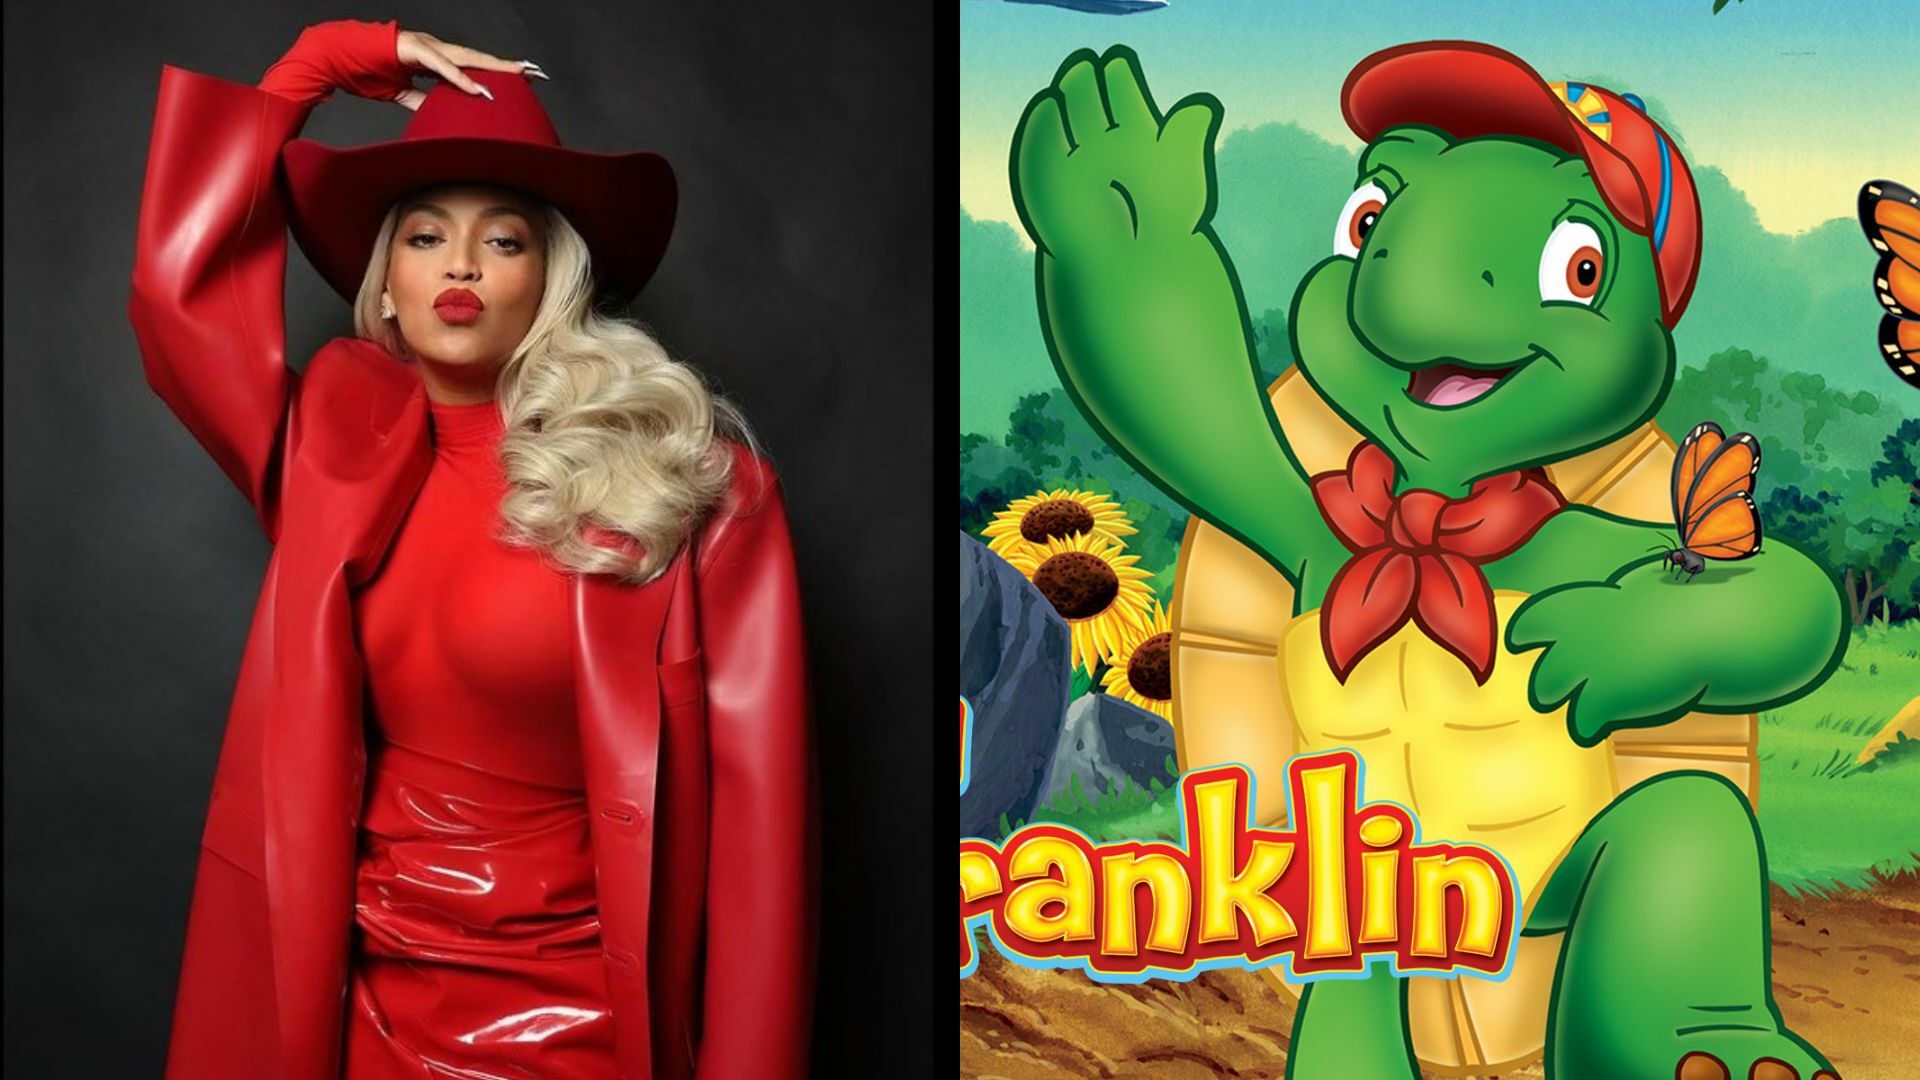 ¿Beyoncé plagió la canción de la serie animada Franklin?